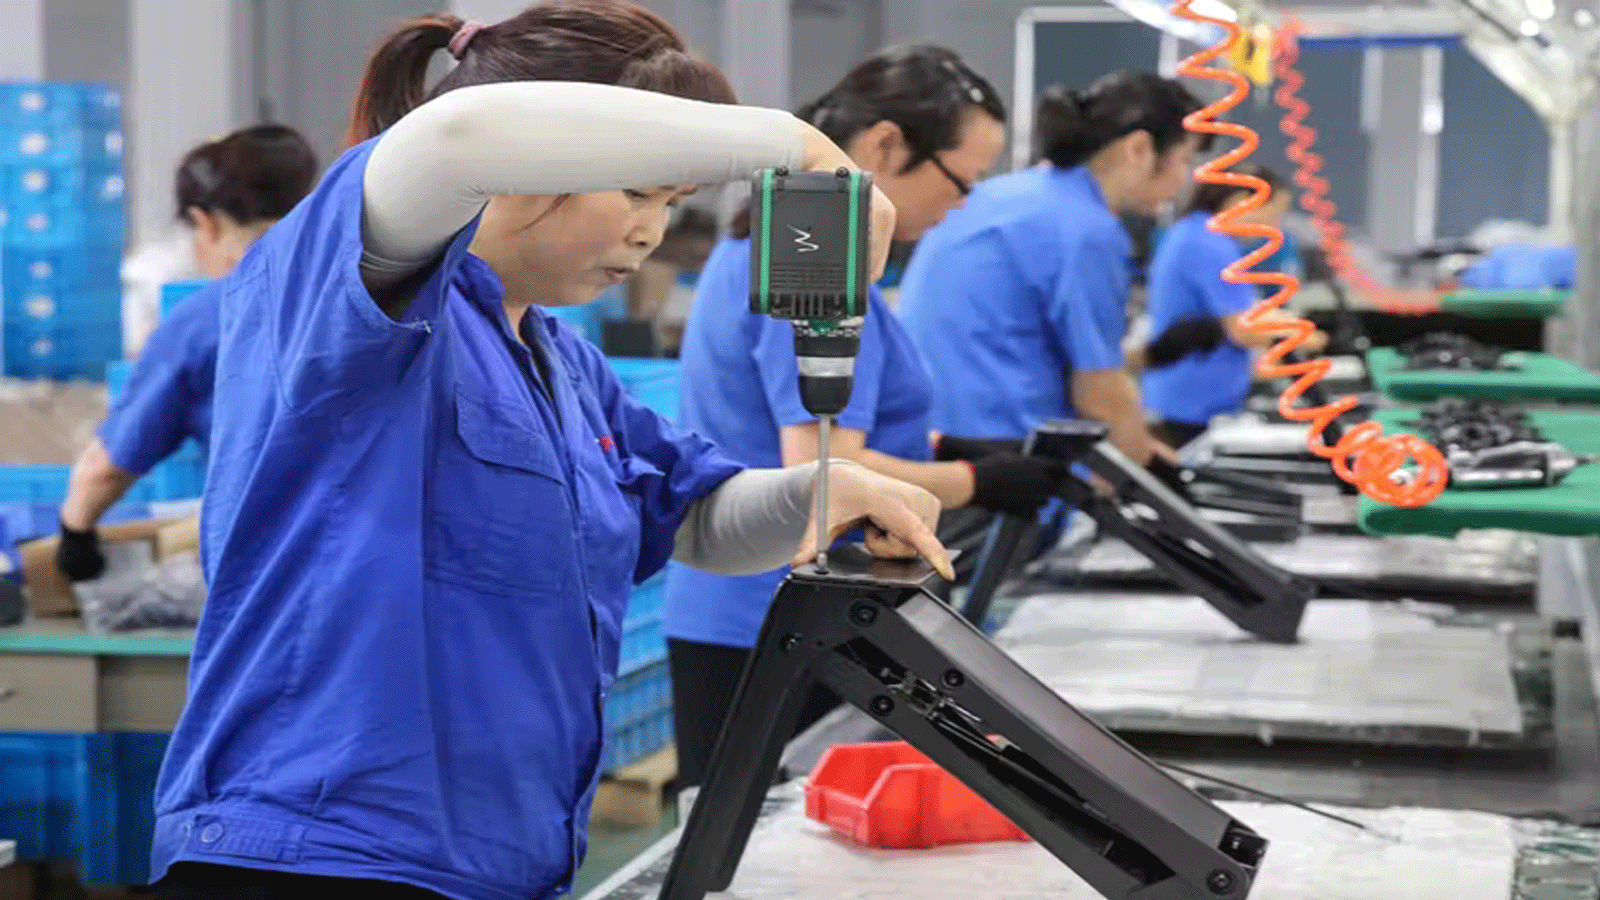 عمال ينتجون مكاتب للتصدير إلى الولايات المتحدة في مصنع في نانتونغ في مقاطعة جيانغسو بشرق الصين في 4 أيلول\ سبتمبر 2019.